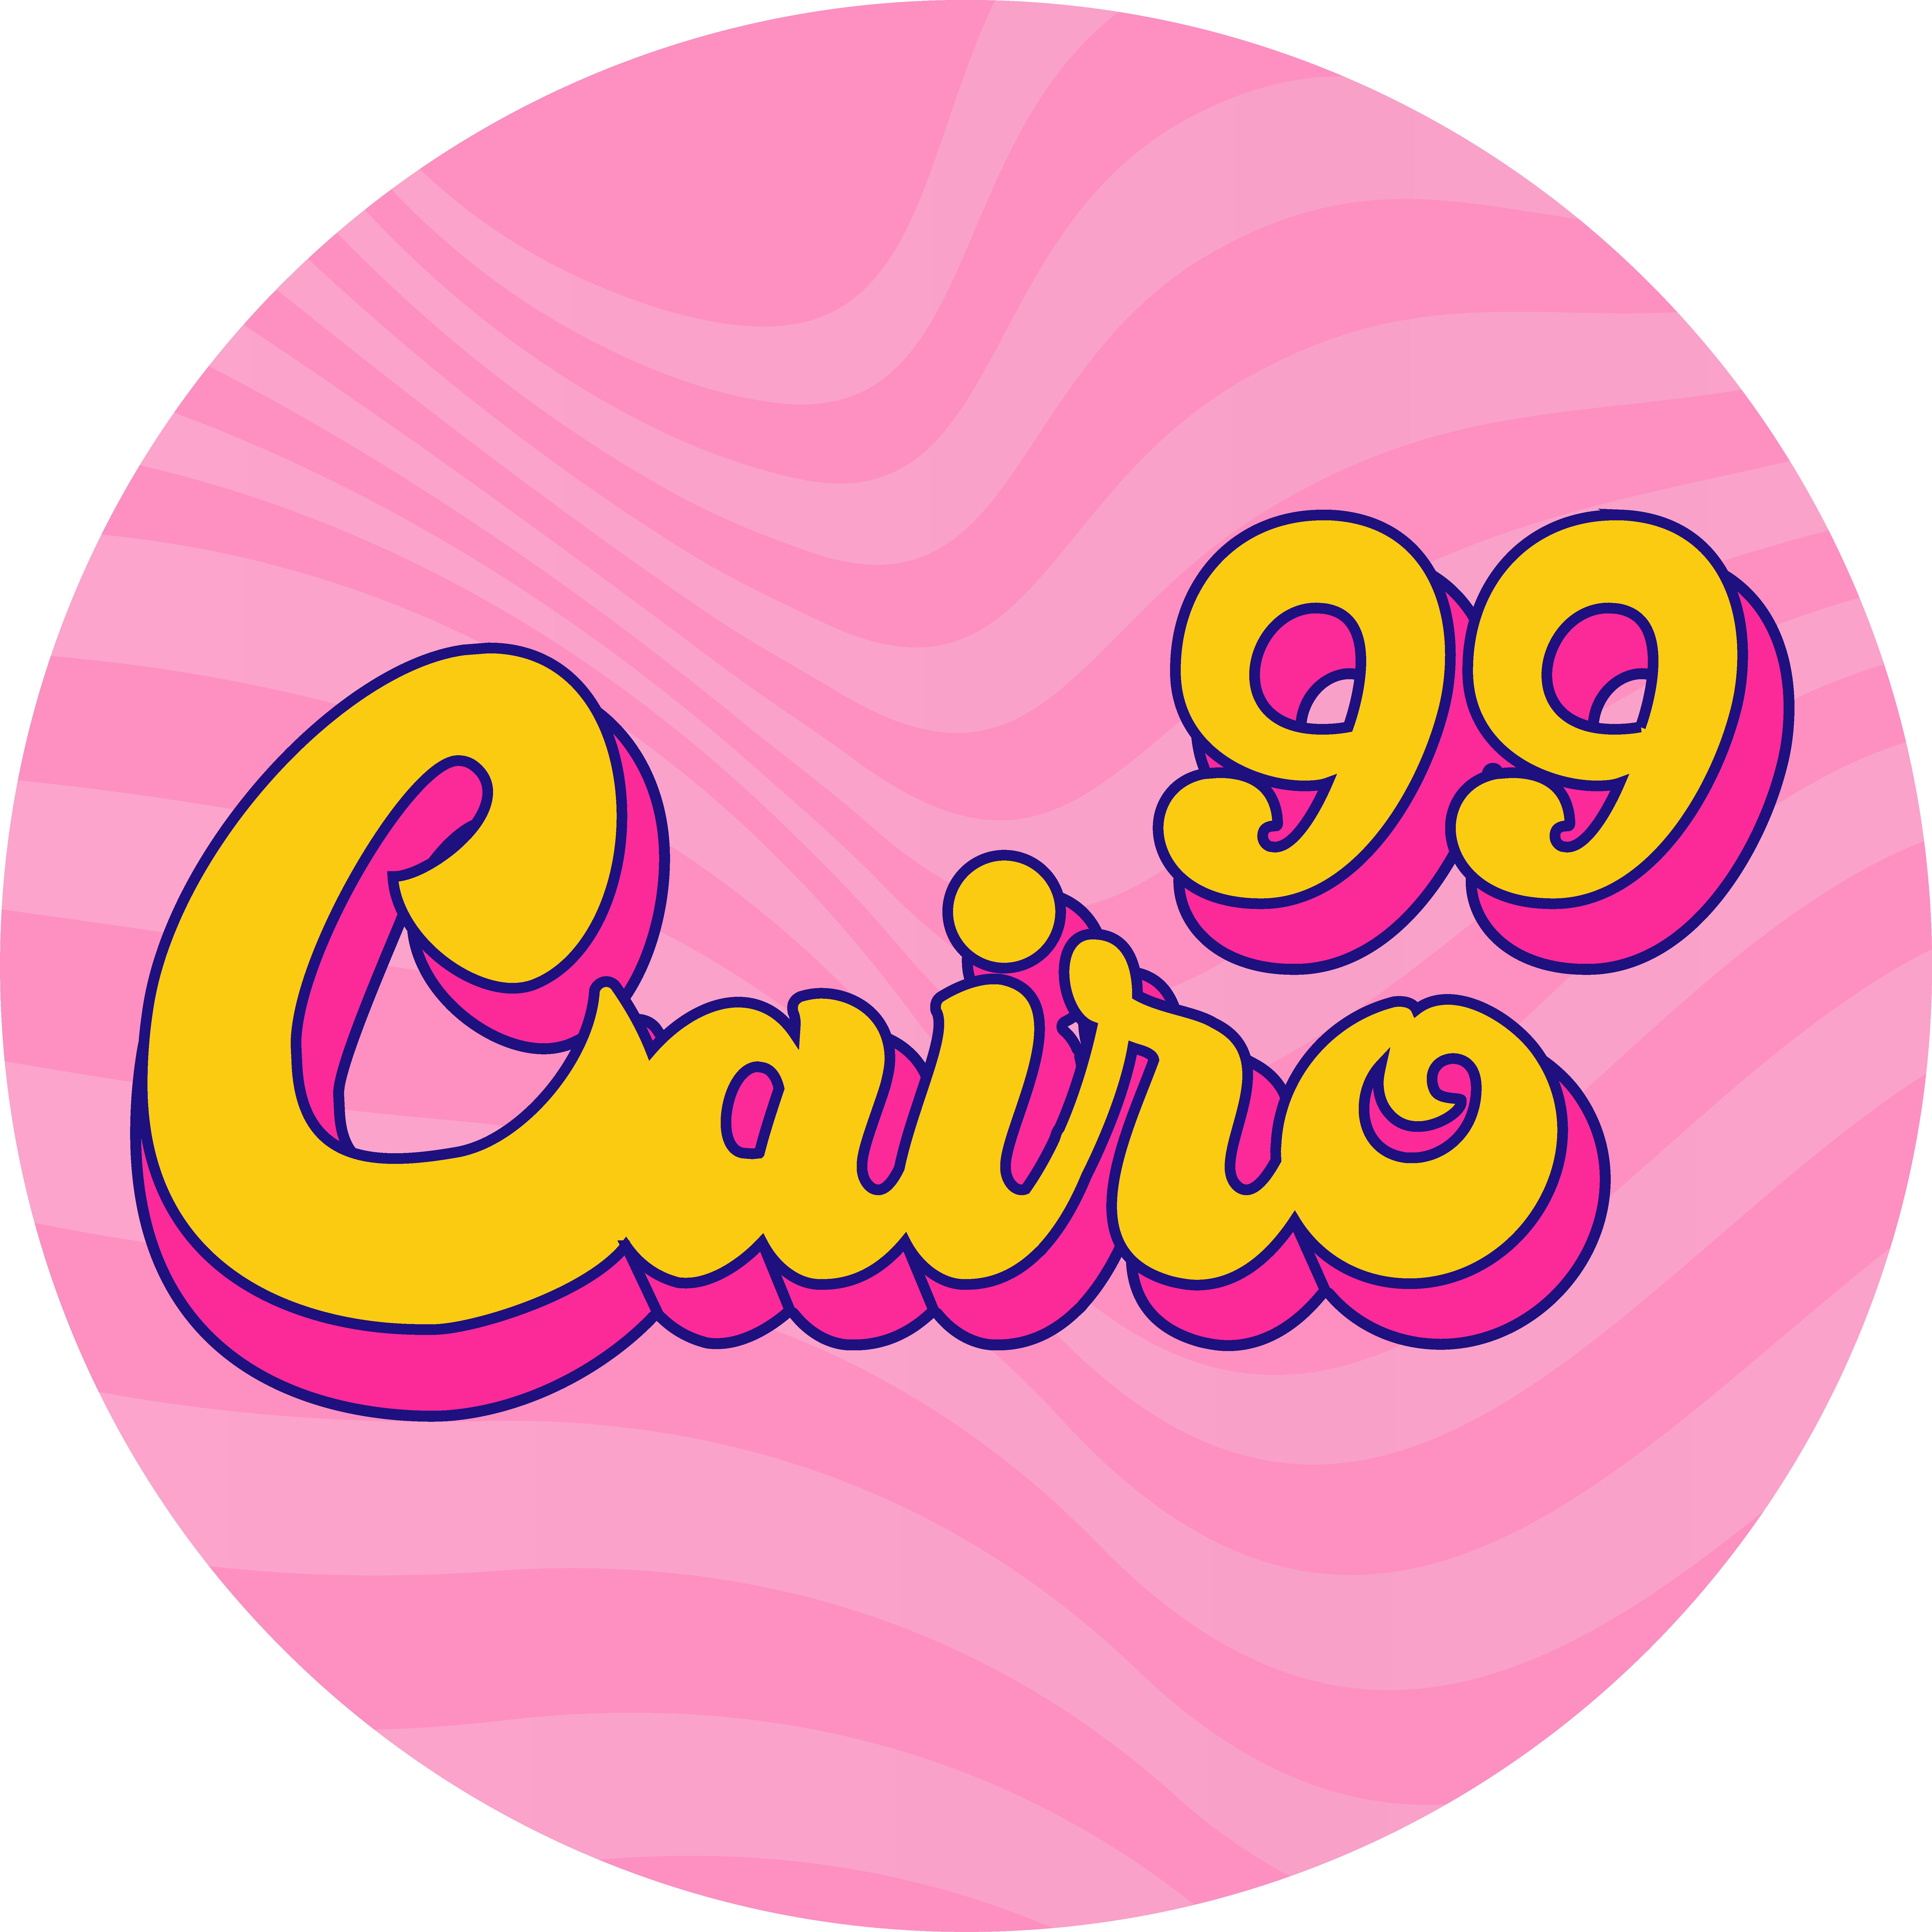 Cairo99